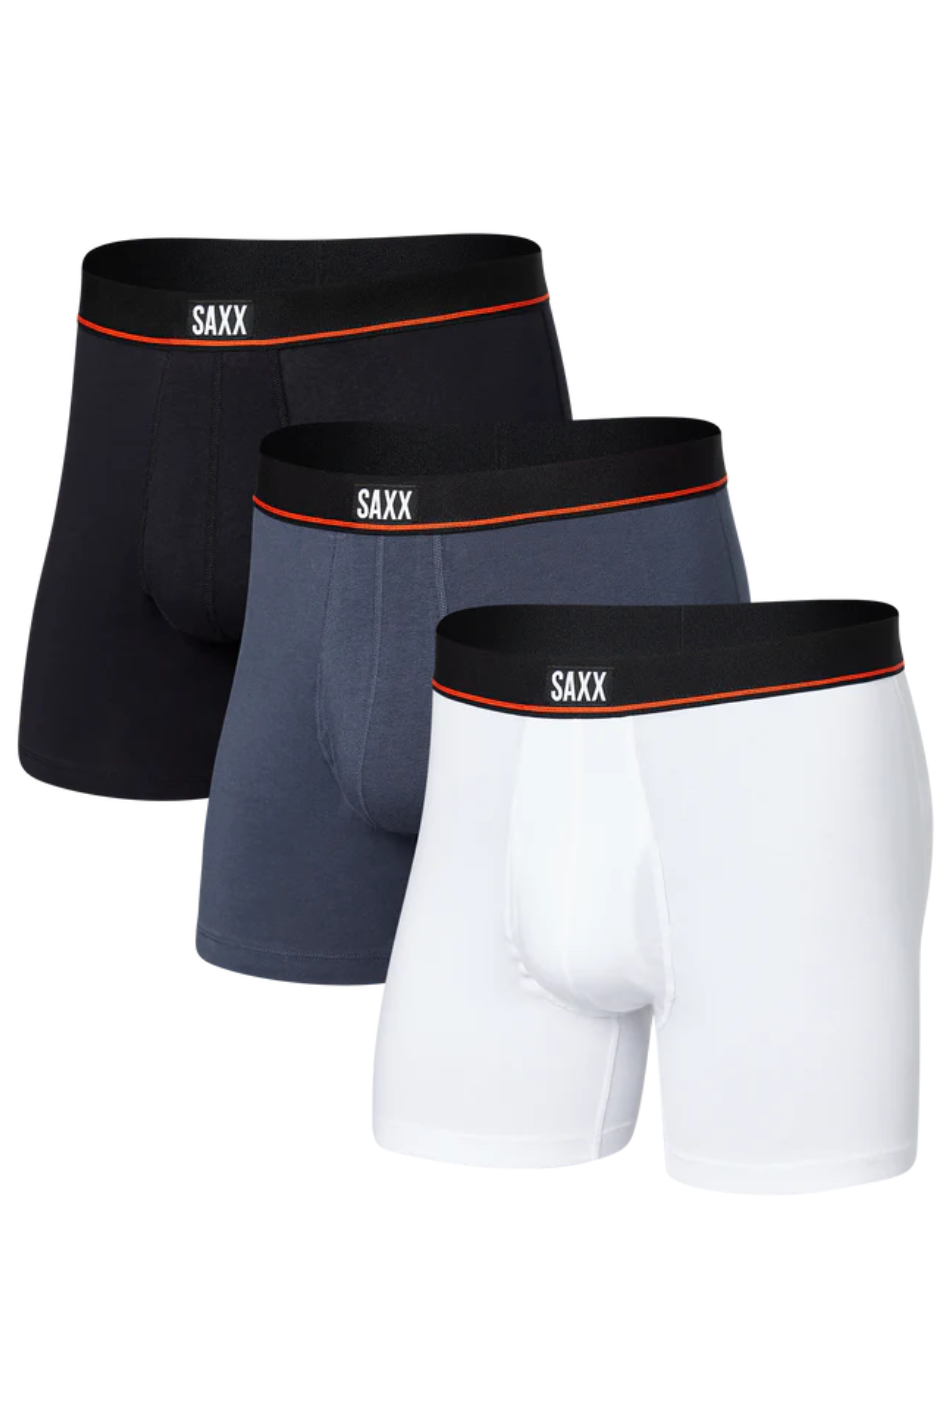 SAXX 3 Pack Men's Non-Stop Stretch Cotton Boxer Brief